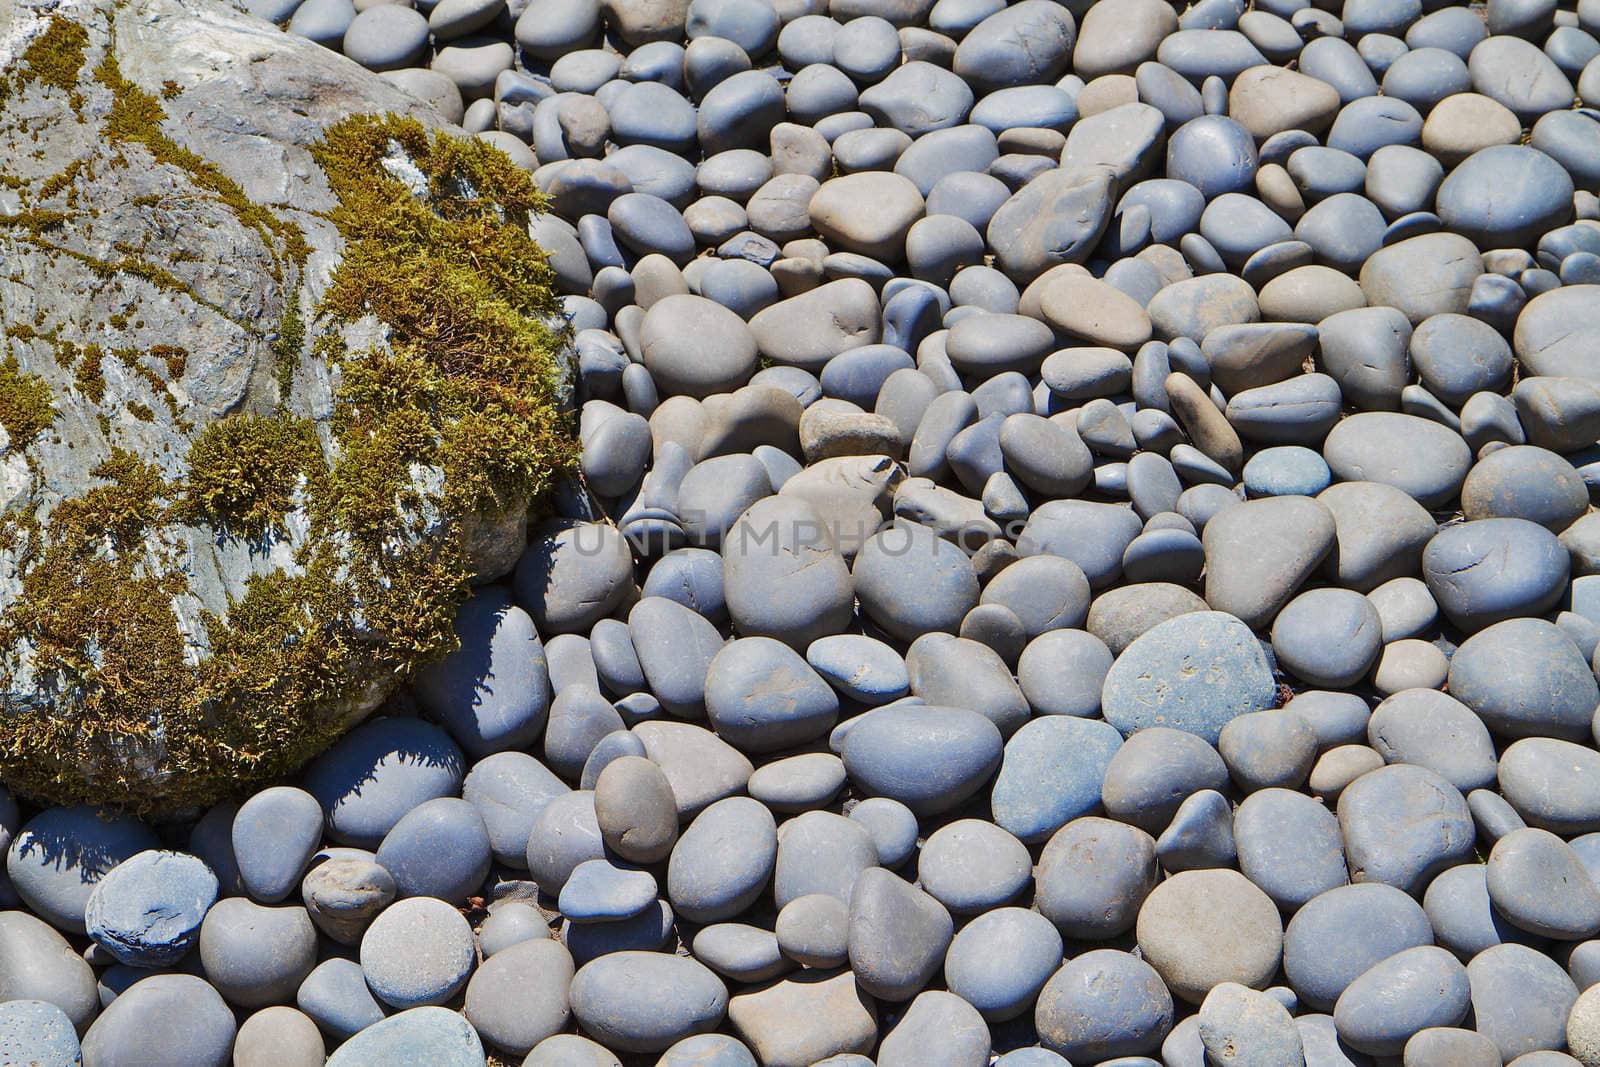 River Rocks and boulder by bobkeenan